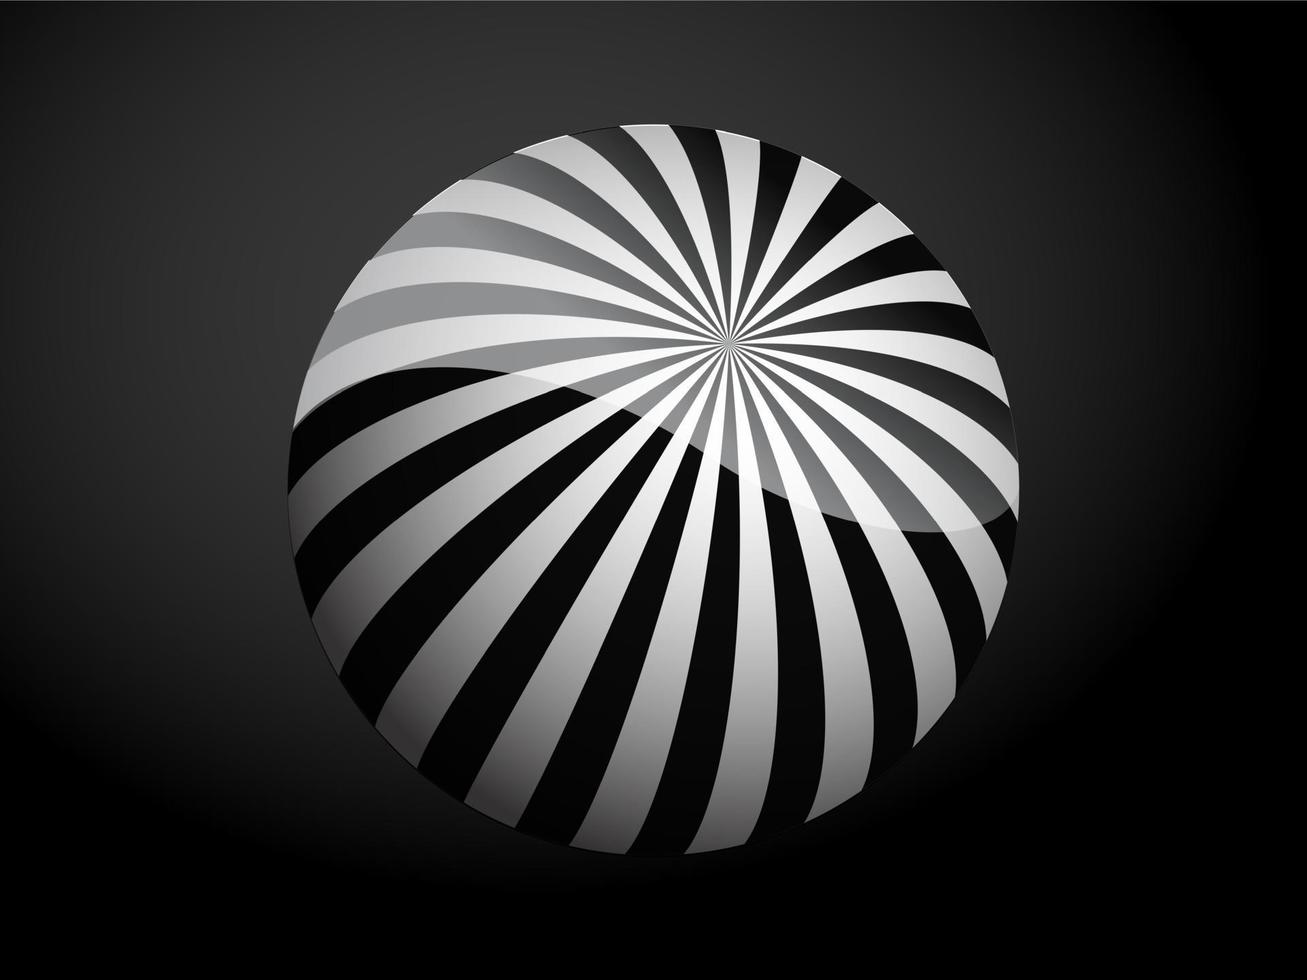 padrão abstrato cobrir bola 3d preto e branco. ilustração vetorial em fundo escuro. vetor